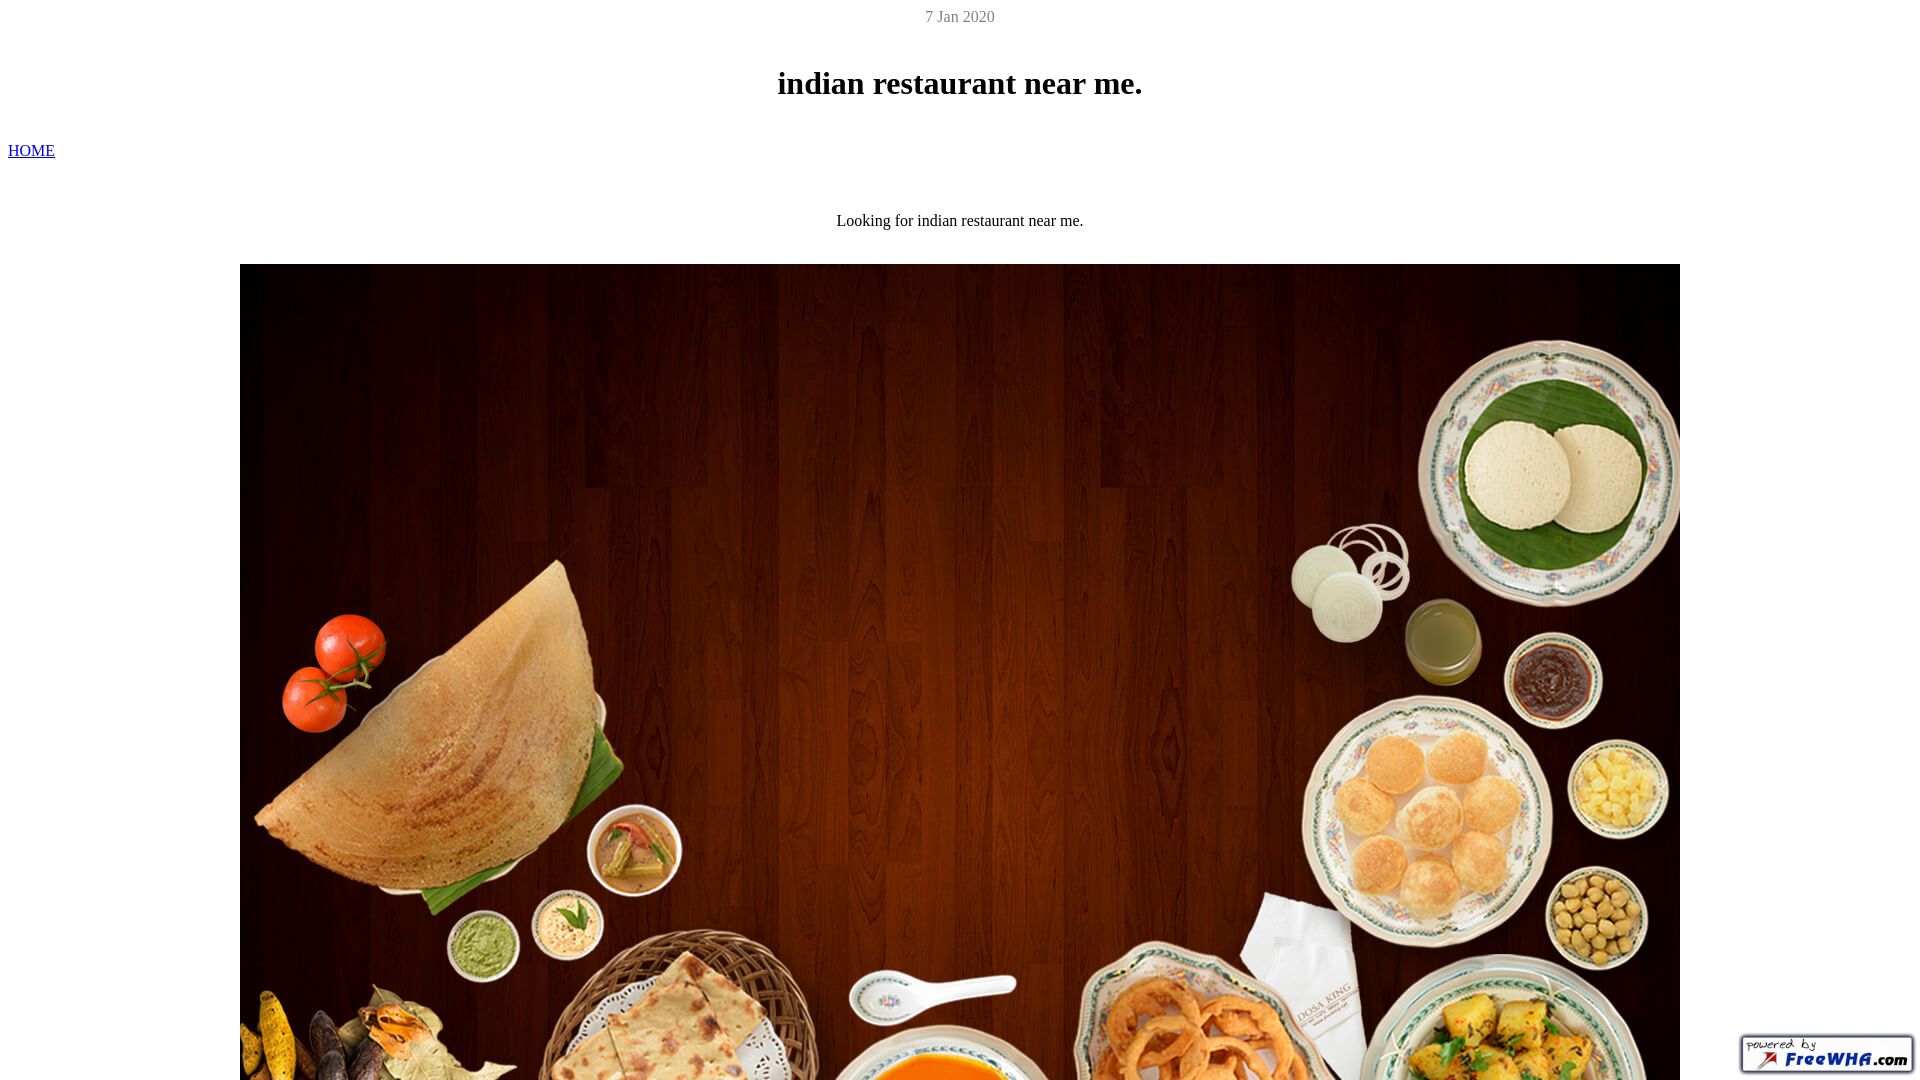 Stato del sito web indianrestaurantnearme.ueuo.com è   ONLINE